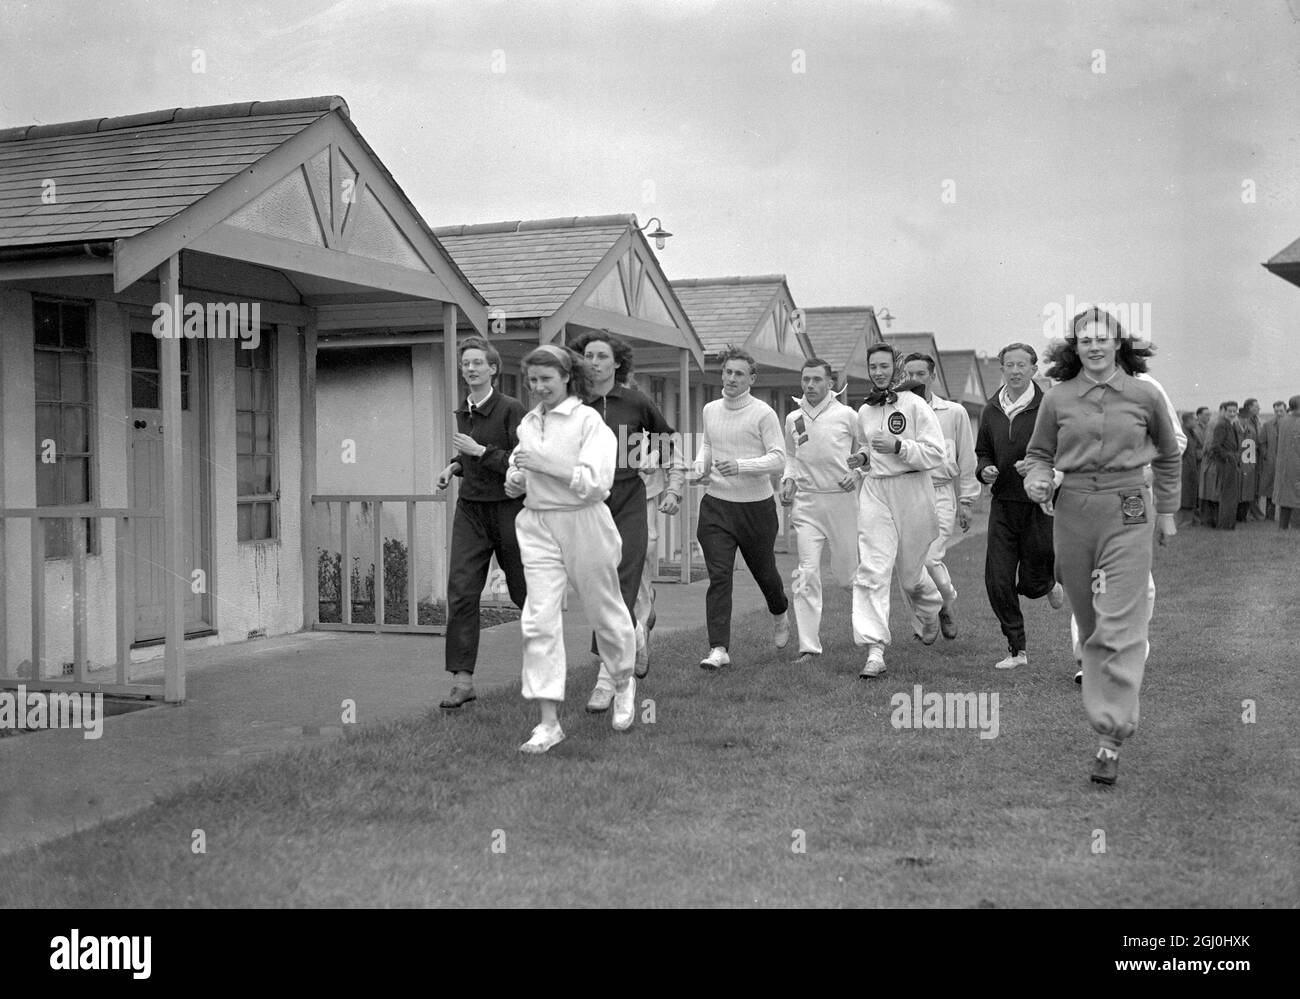 Über 200 Athleten, Trainer, Beamte und Beobachter versammelten sich im Butlin's Camp in Clacton zum ersten vorolympischen „Get Together“ in der britischen Geschichte. Während dieses Wochenendes werden sich unsere olympischen Mitglieder kennenlernen und so den Teamgeist und die Kameradschaft des britischen Teams verbessern. 17. April 1948 Stockfoto